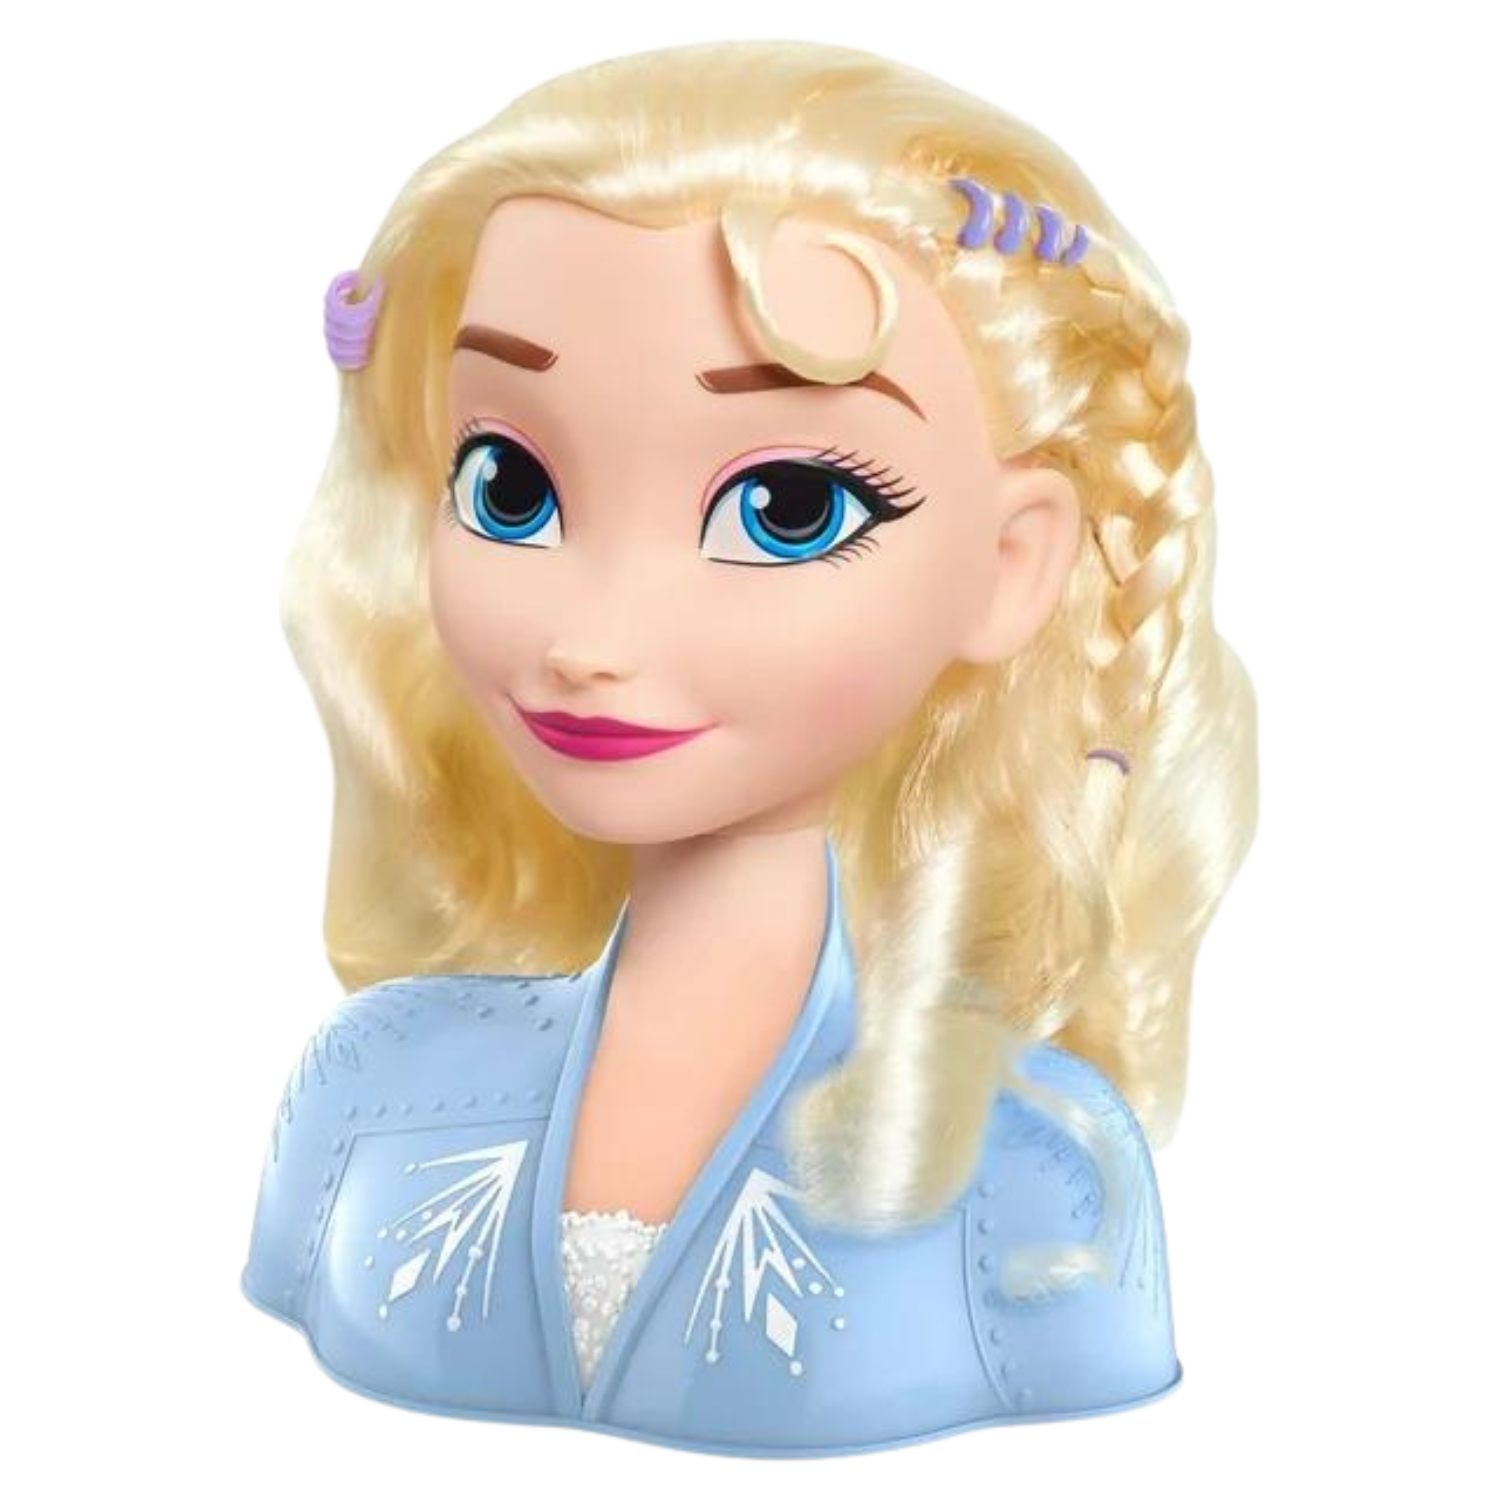 Questa immagine mostra una testa di plastica di Elsa e il suo torso superiore con capelli biondi che spuntano da essa.